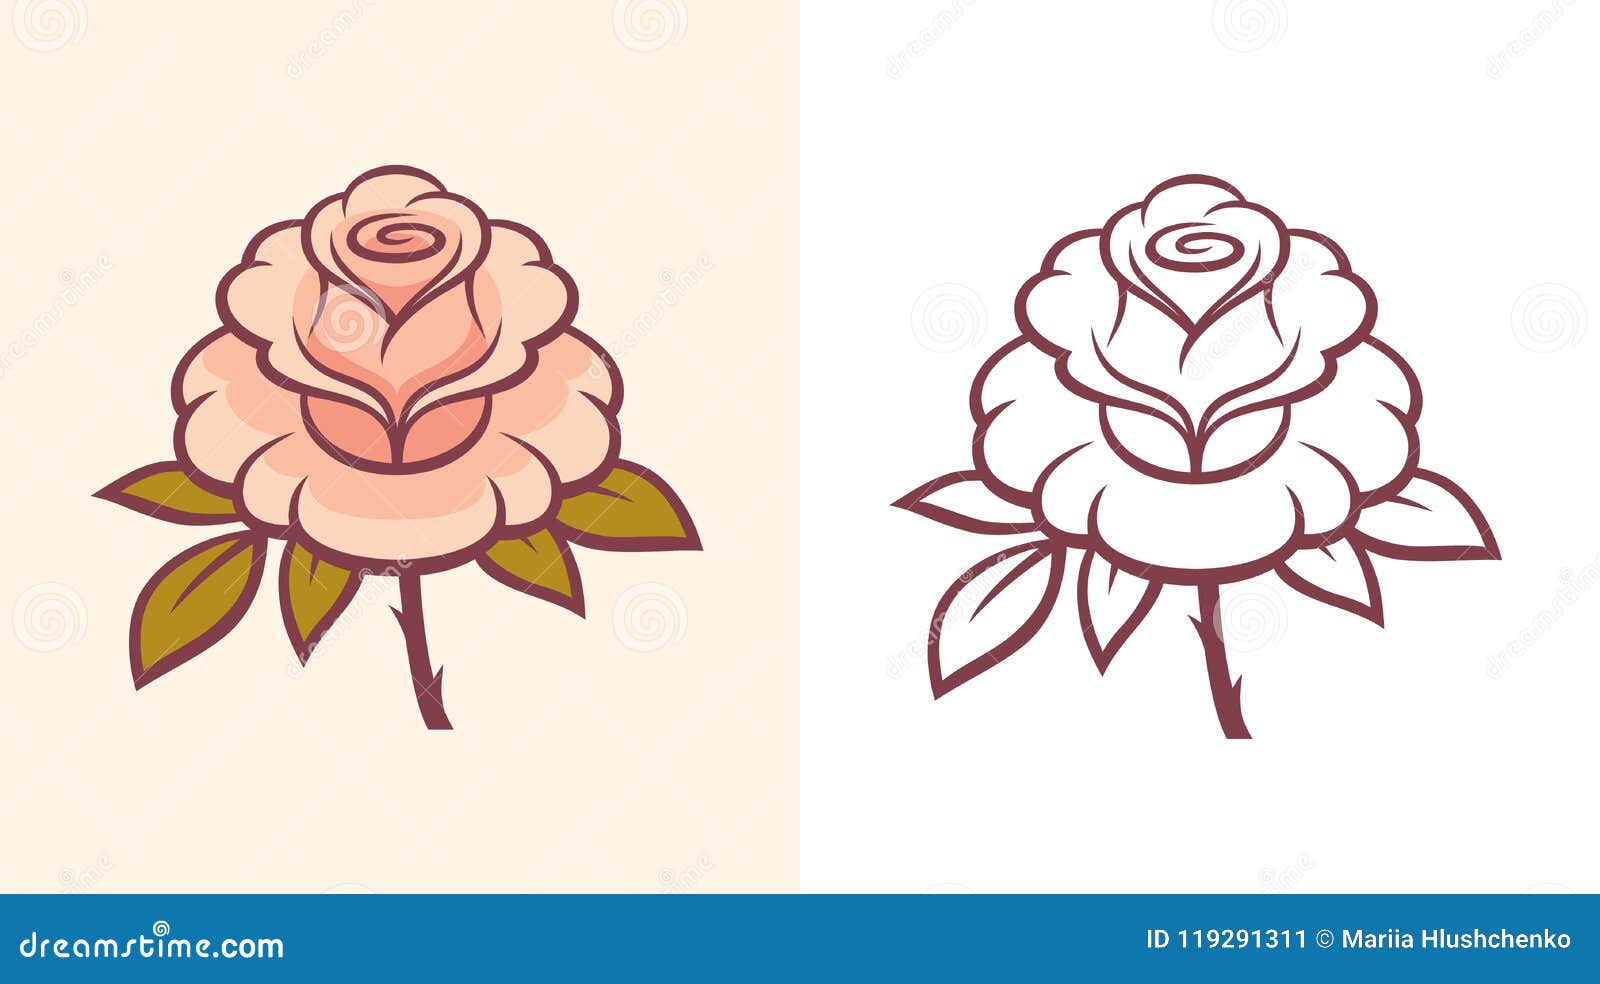 Illustration De Fleur De Rose Pour Le Logo Ou Le Tatouage